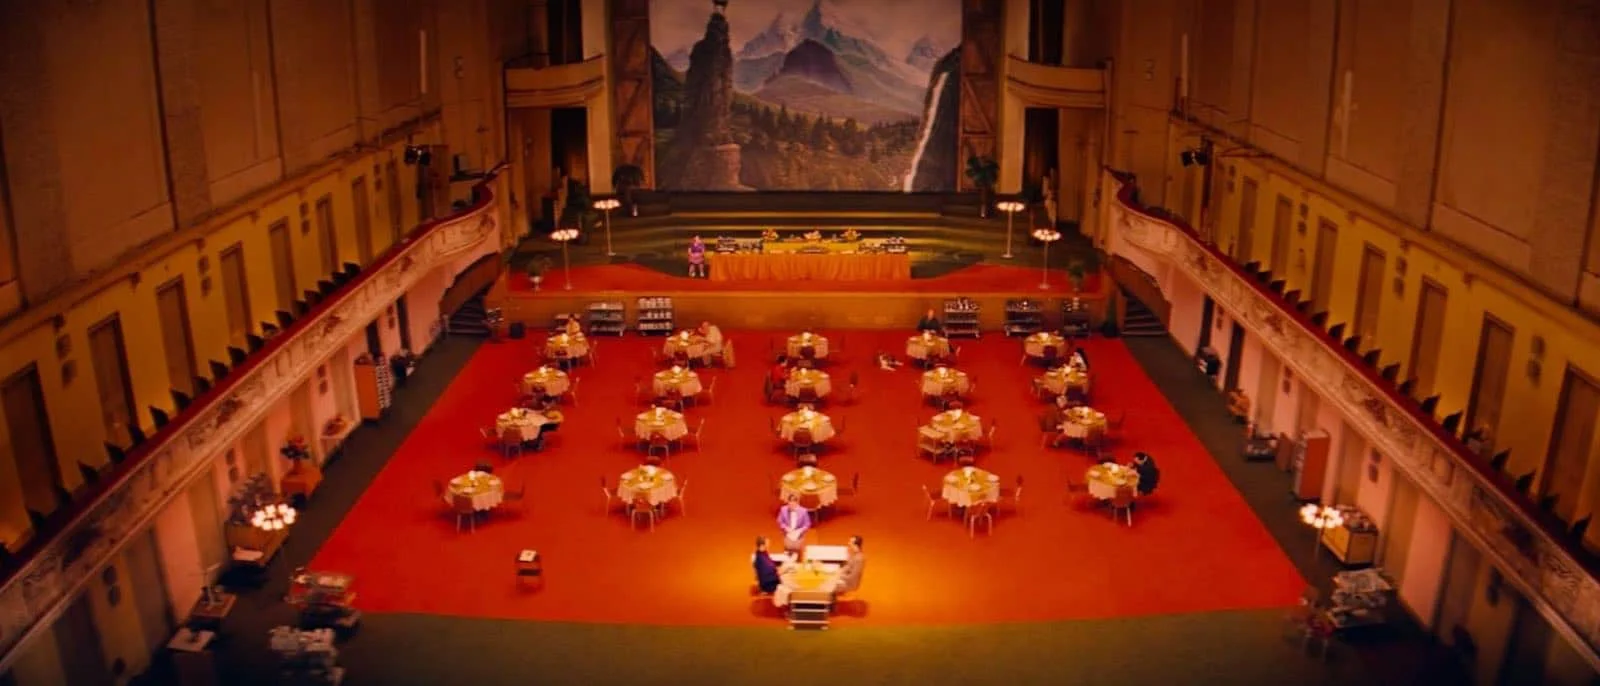 Establishing Shot - Grand Budapest Hotel - Dinner Scene